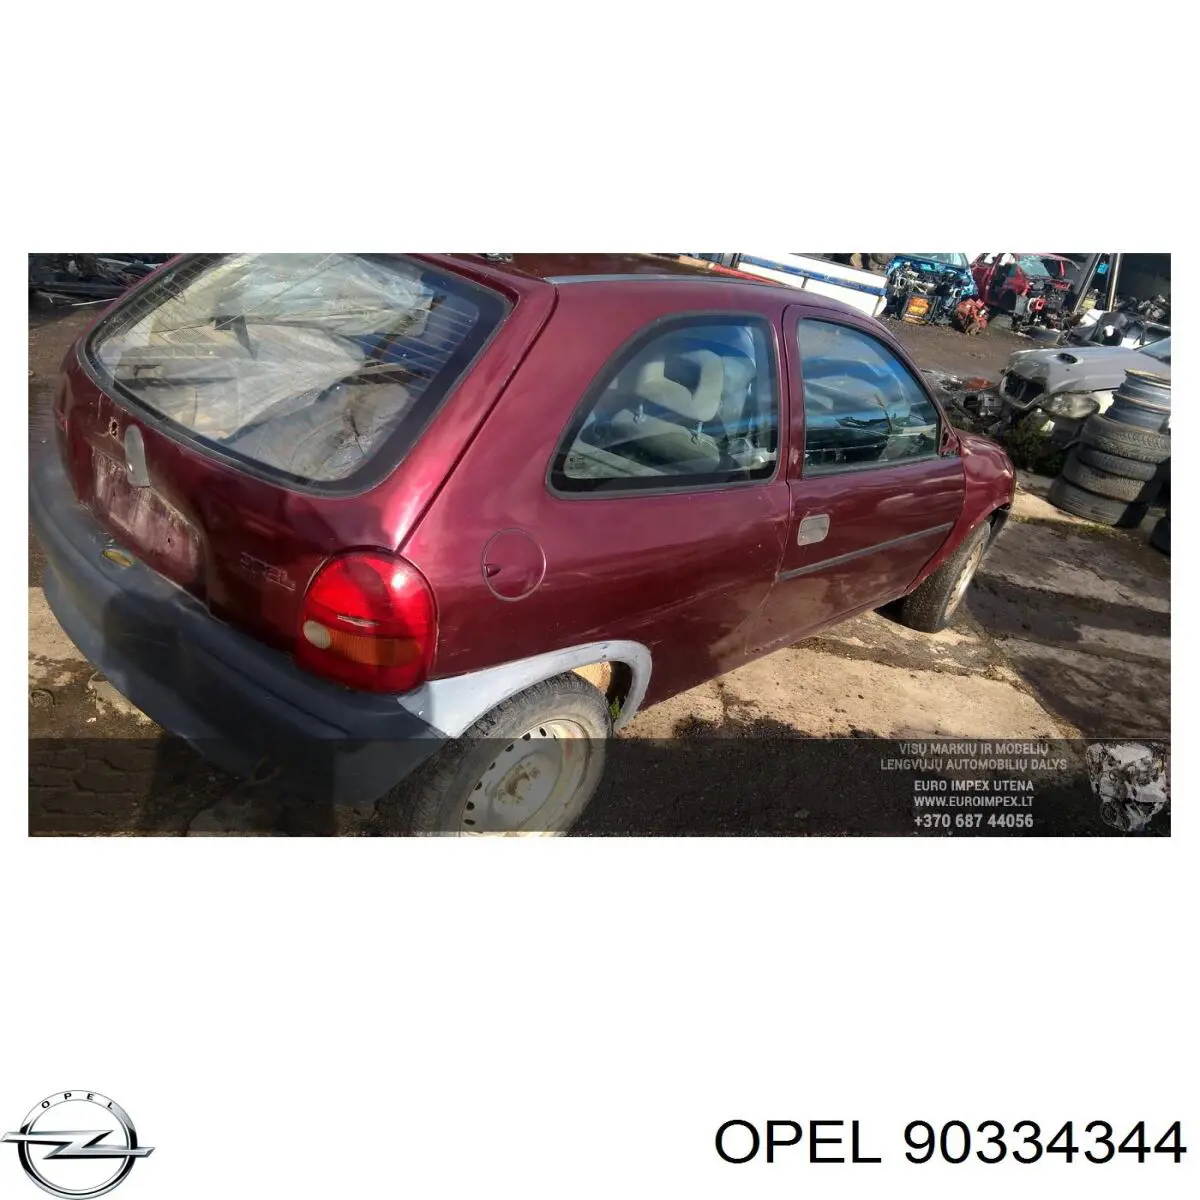 Caja de cambios mecánica, completa para Opel Corsa (93)